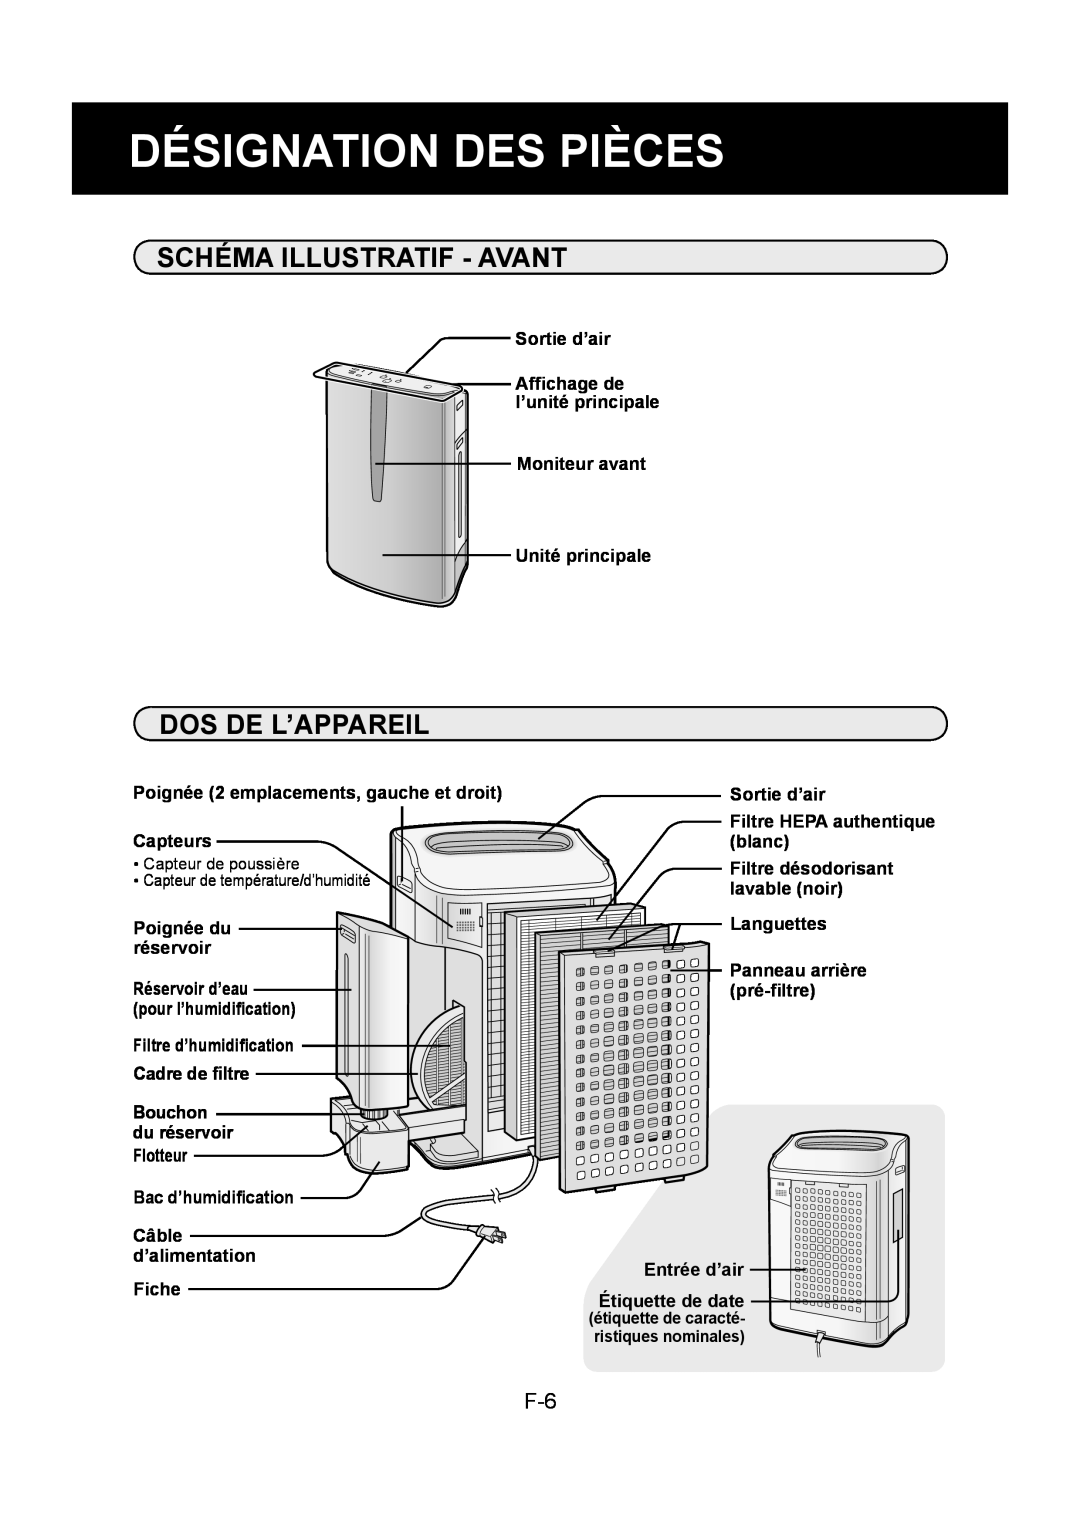 Sharp KC-860U operation manual Désignation Des Pièces, Schéma Illustratif - Avant, Dos De L’Appareil 